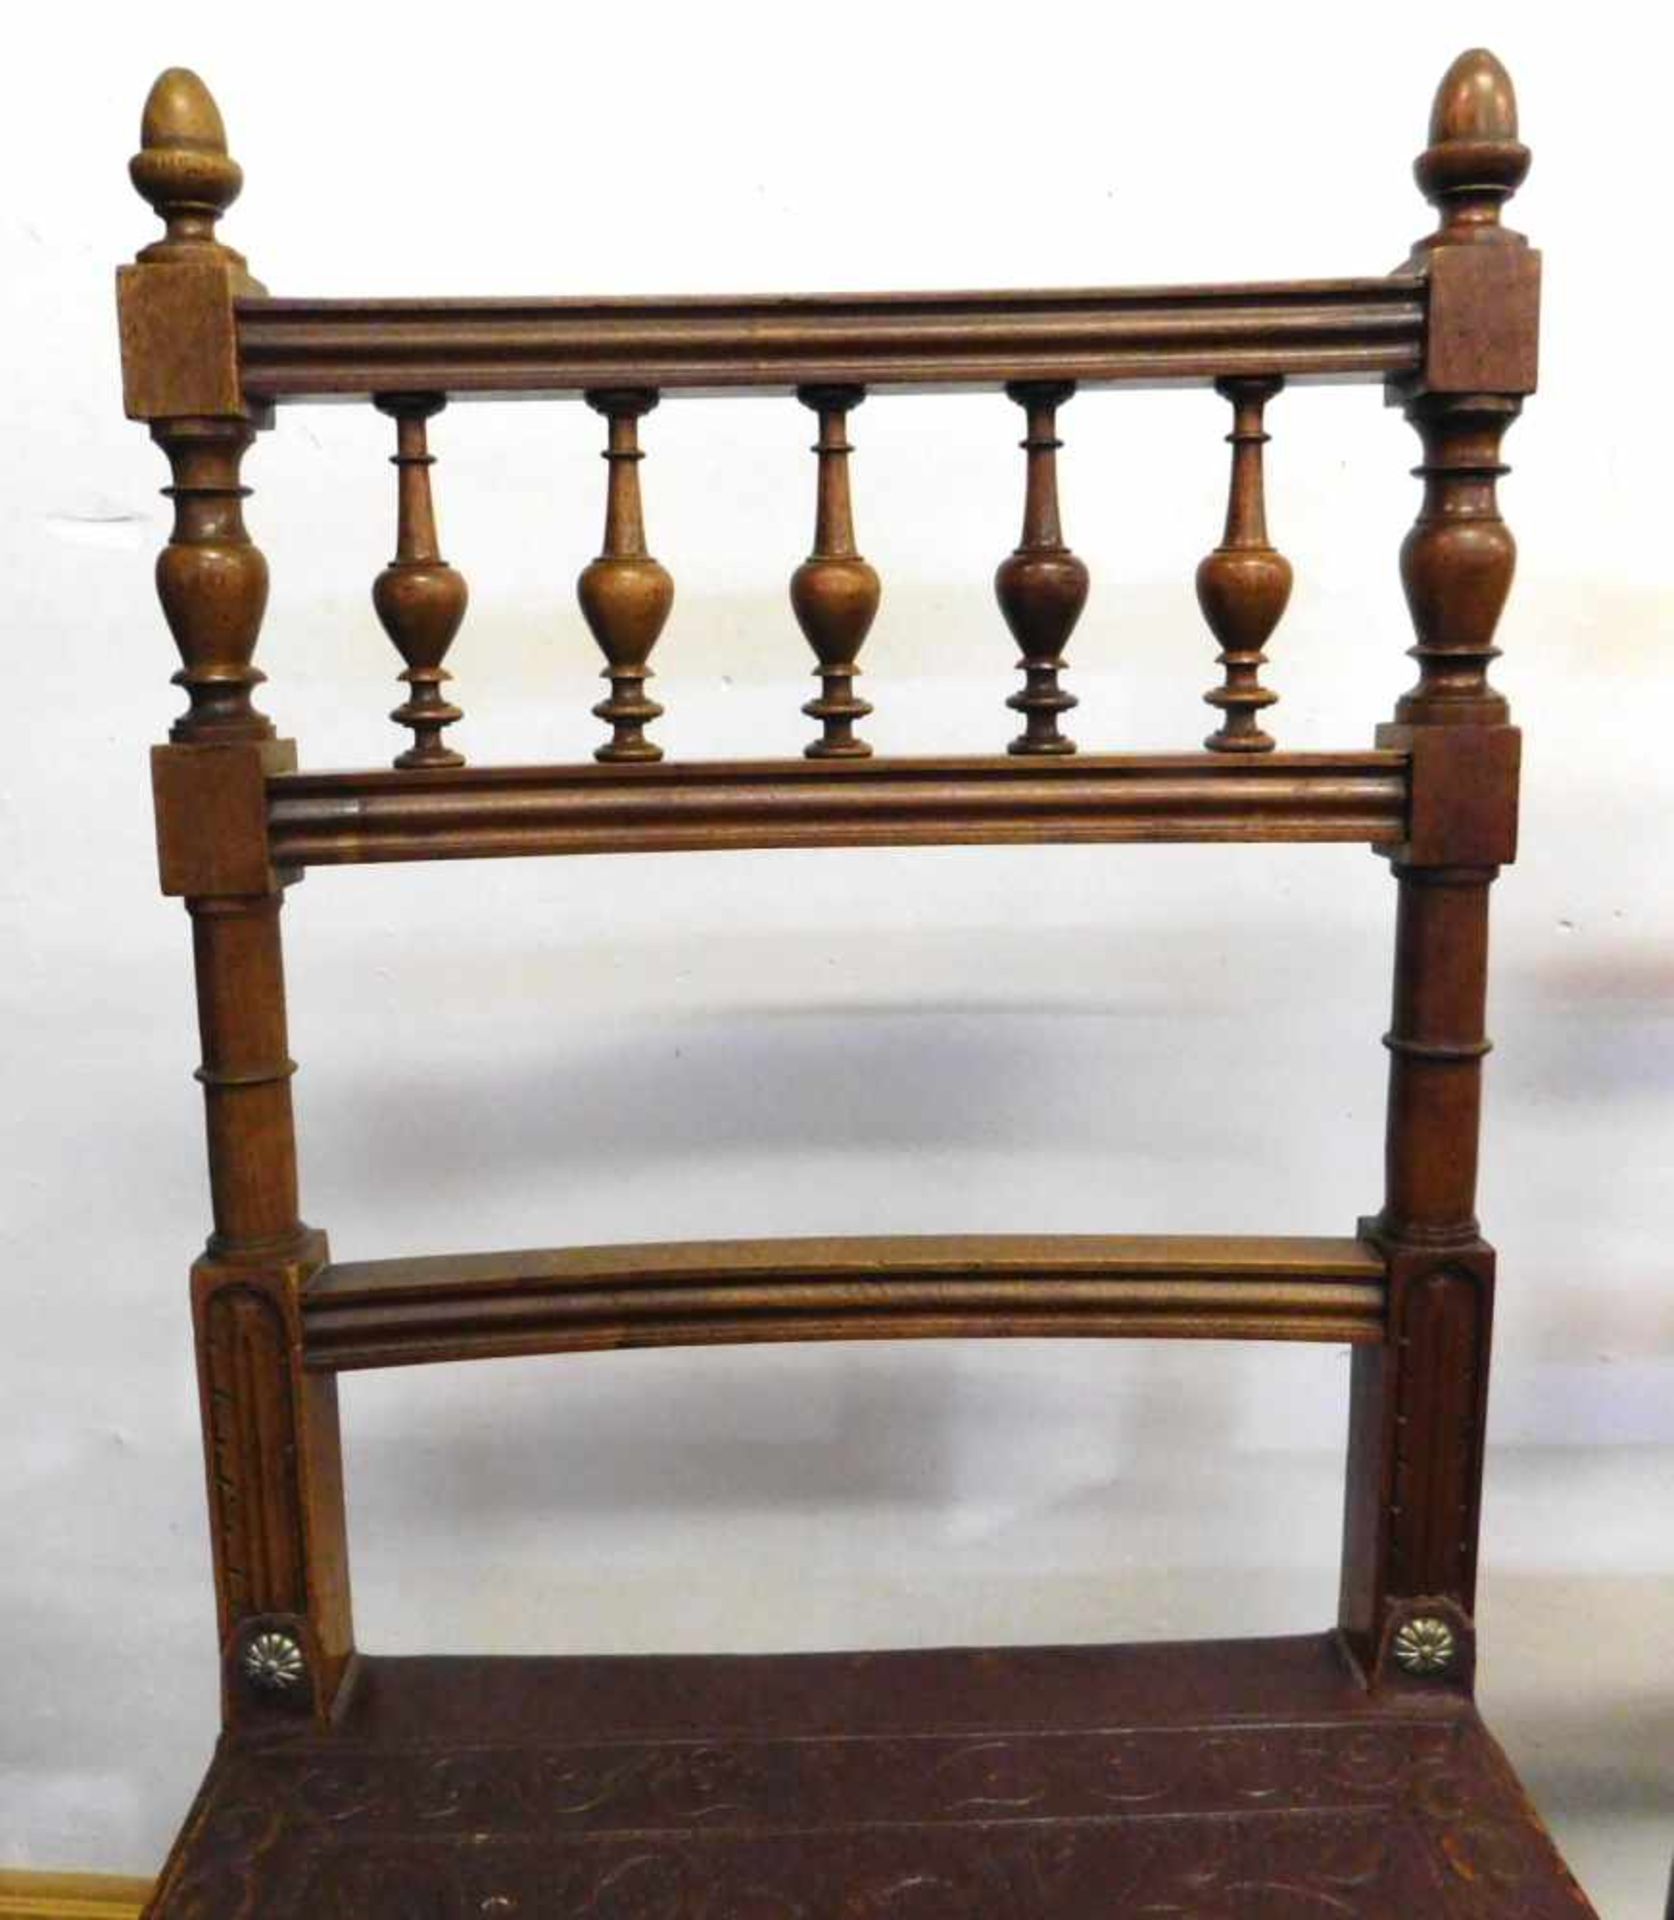 4 Stühle, Frankreich, Historismus um 1880, Nussbaum - Bild 2 aus 5